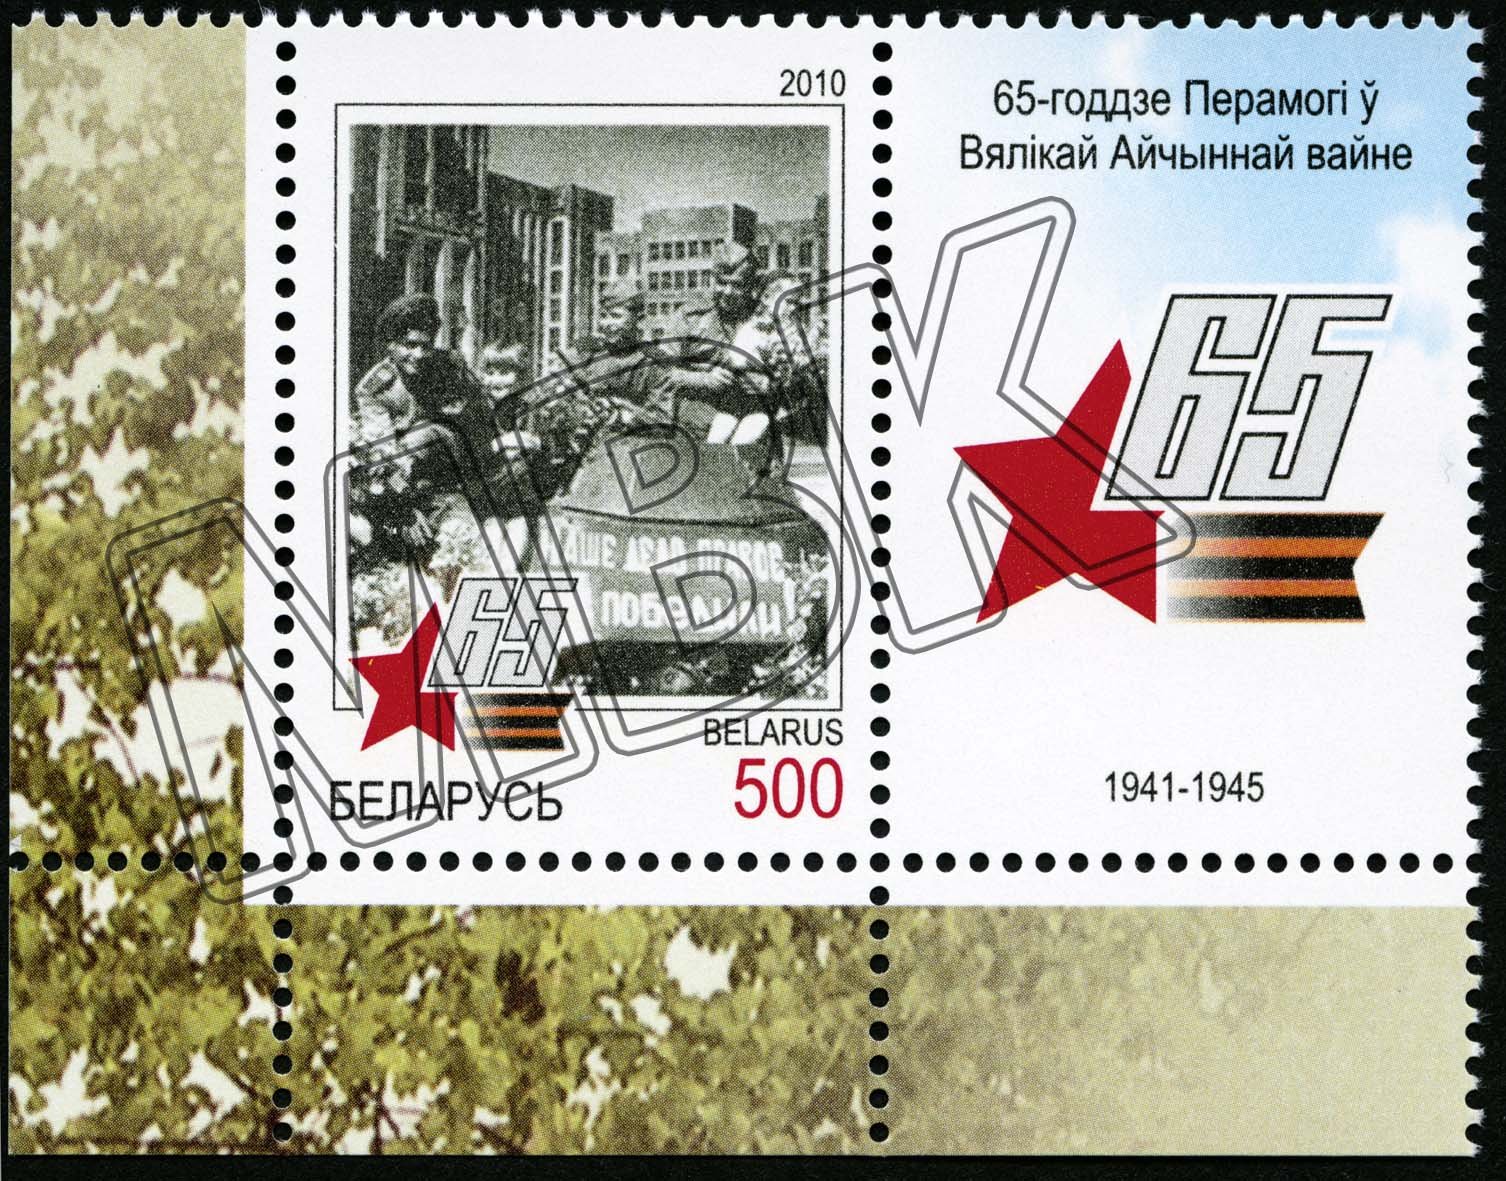 Briefmarke "65 Jahre Sieg im Großen Vaterländischen Krieg", Belarus, 2010 (Museum Berlin-Karlshorst CC BY-NC-SA)